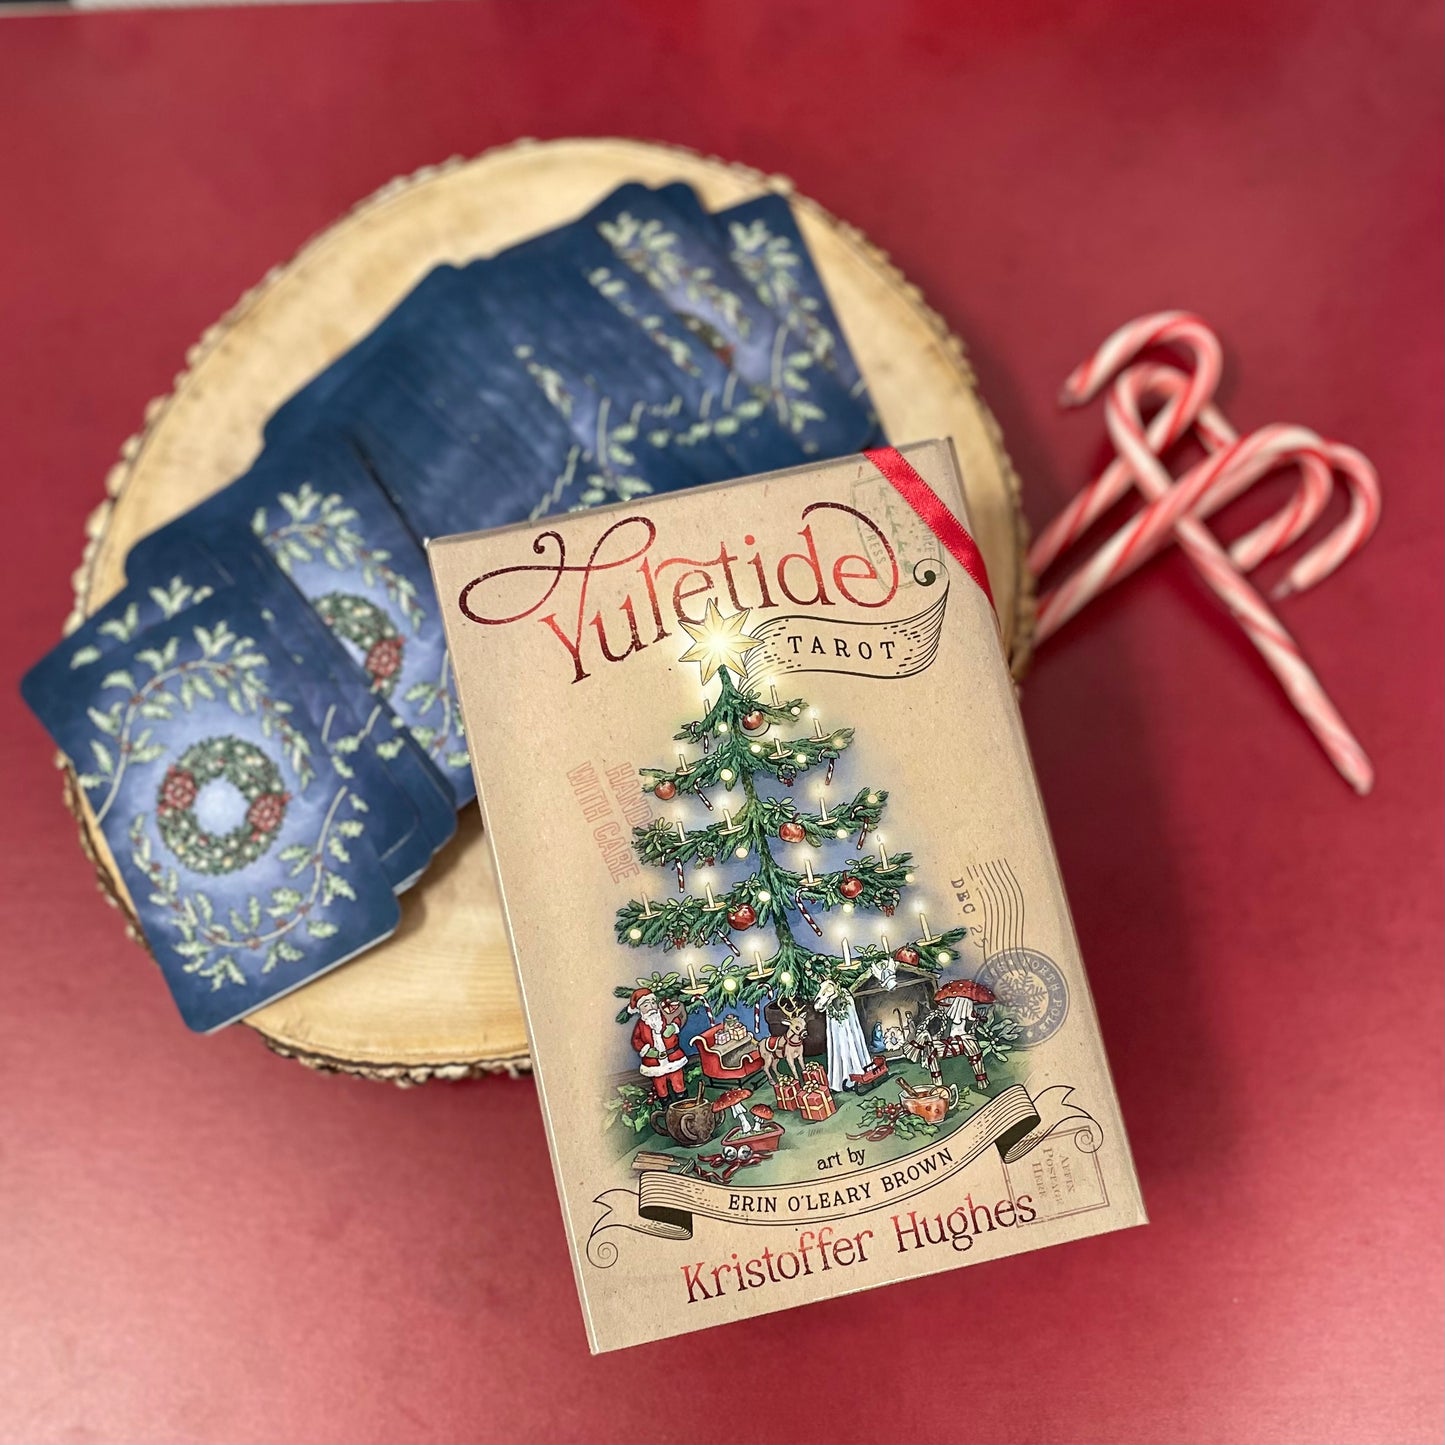 The Yuletide Tarot by Kristoffer Hughes- Christmas Tarot